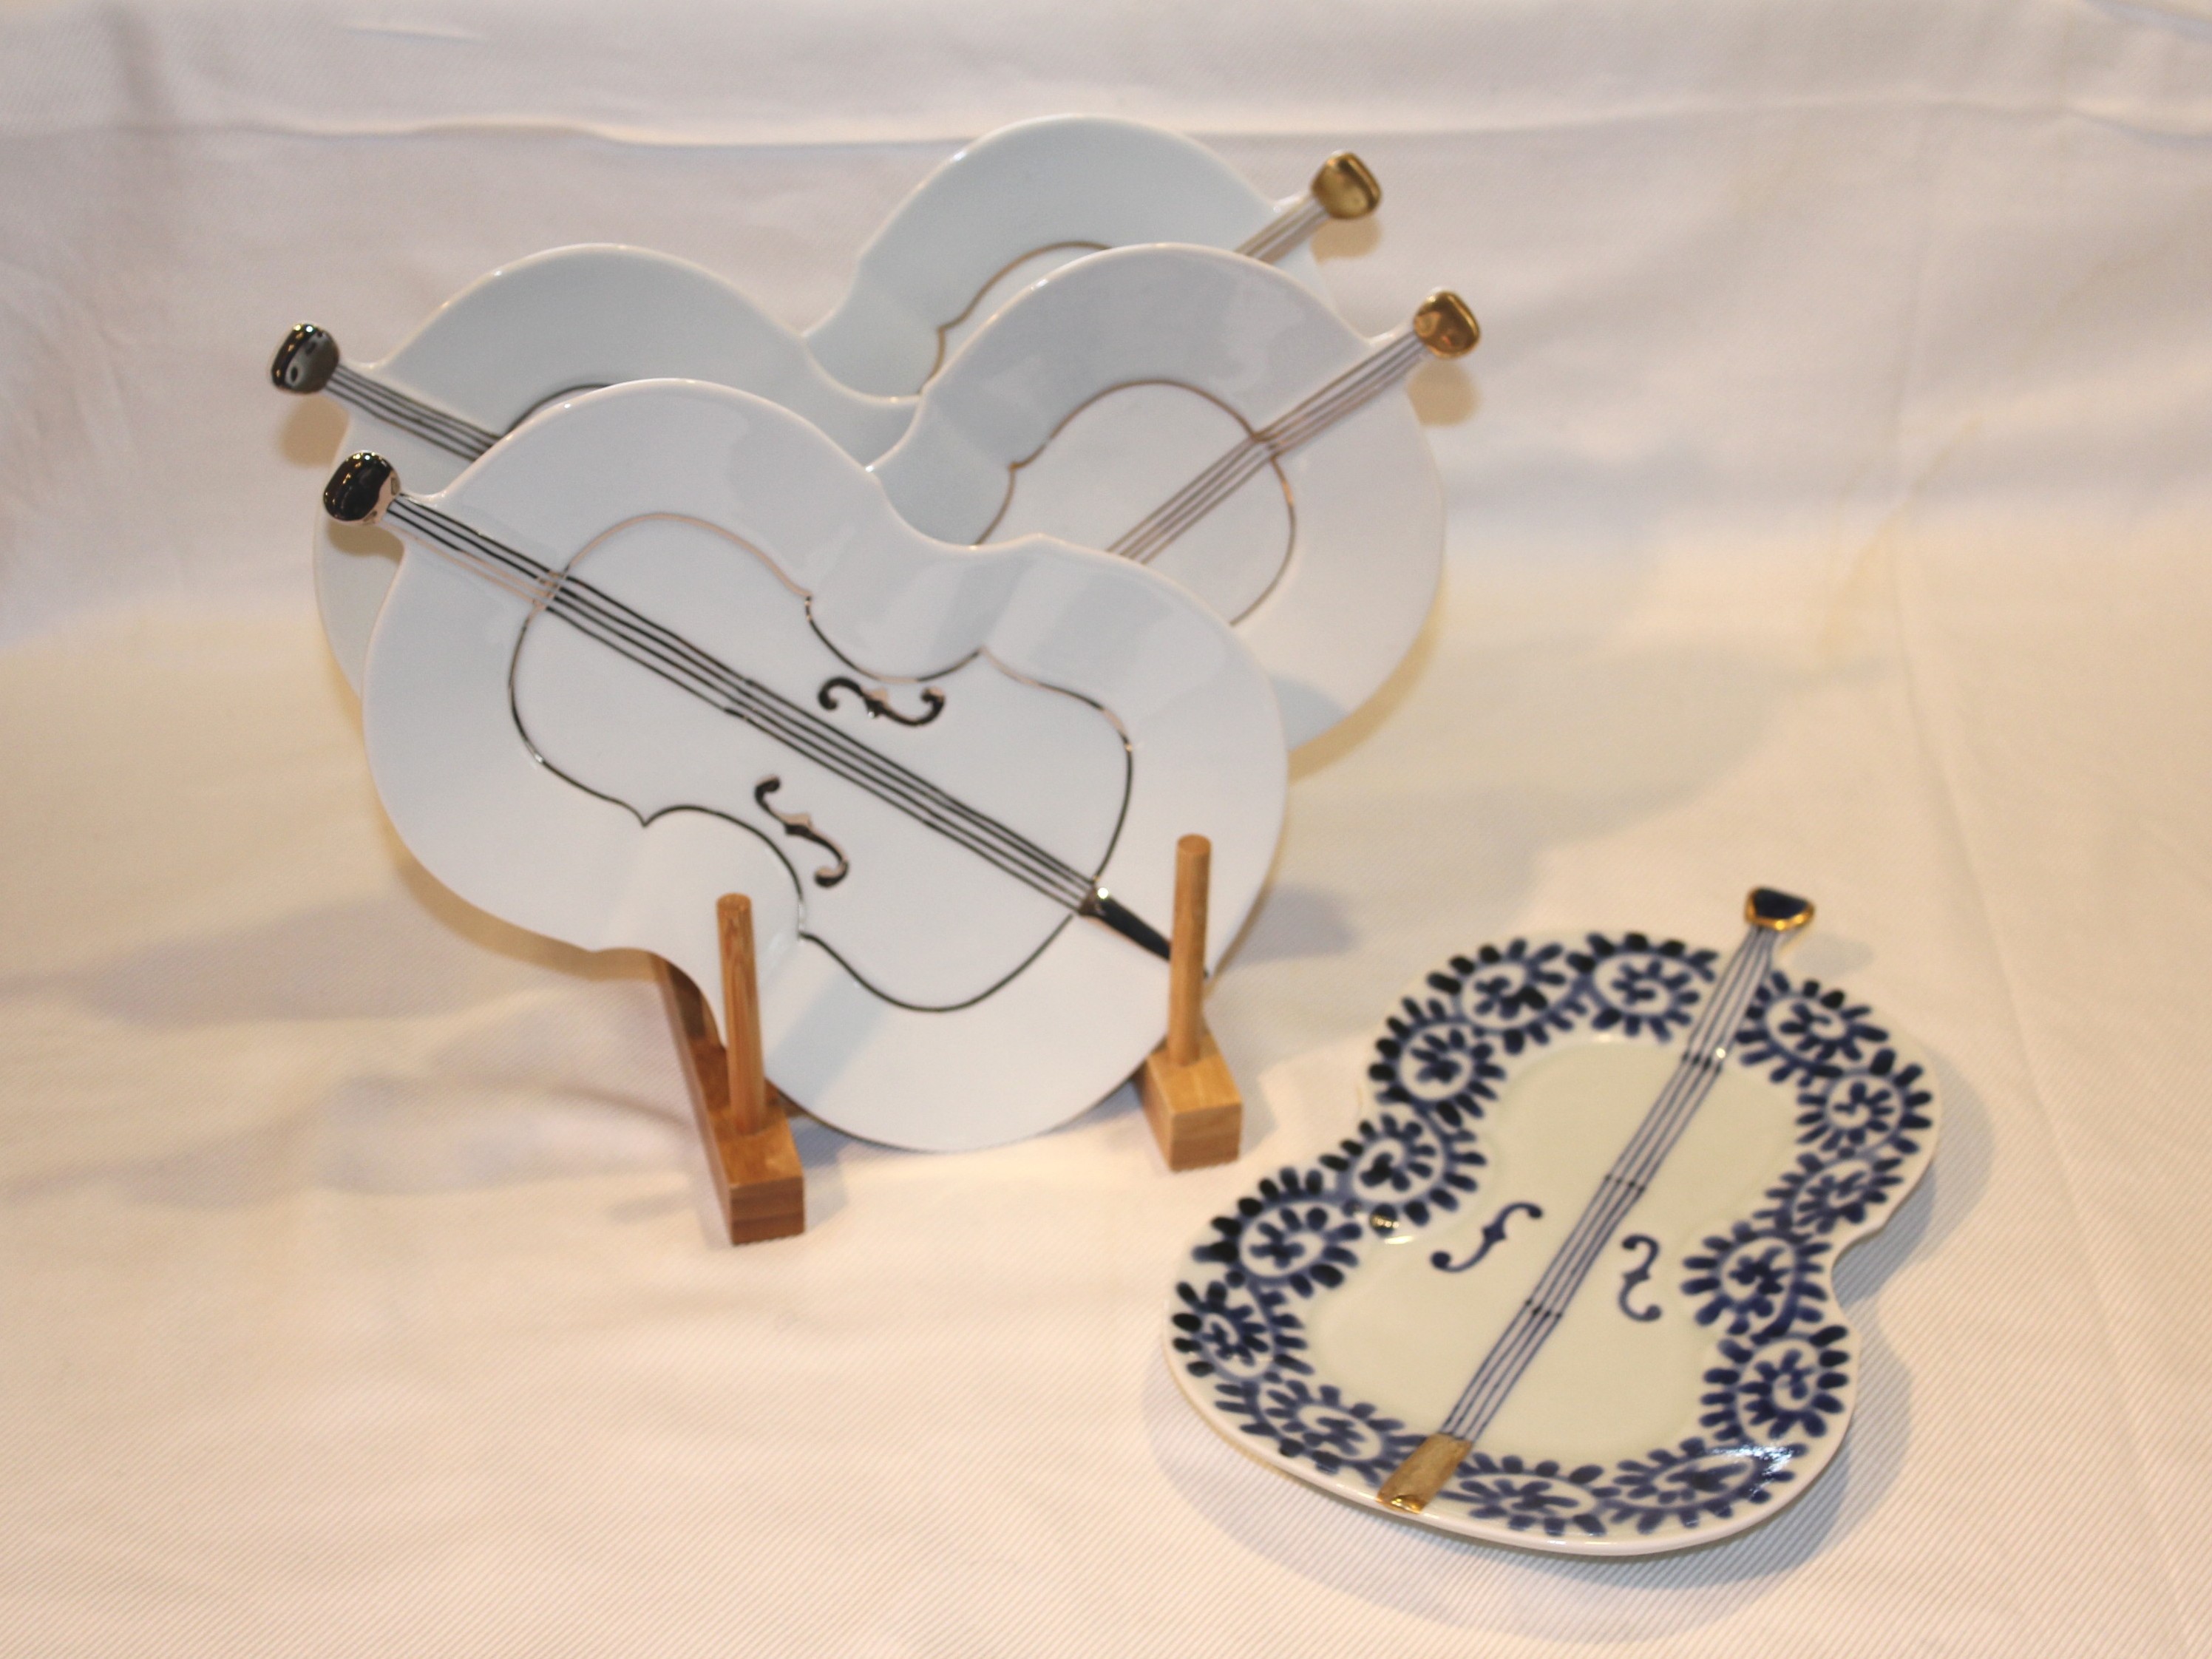 楽器の形をした珍しいお皿。